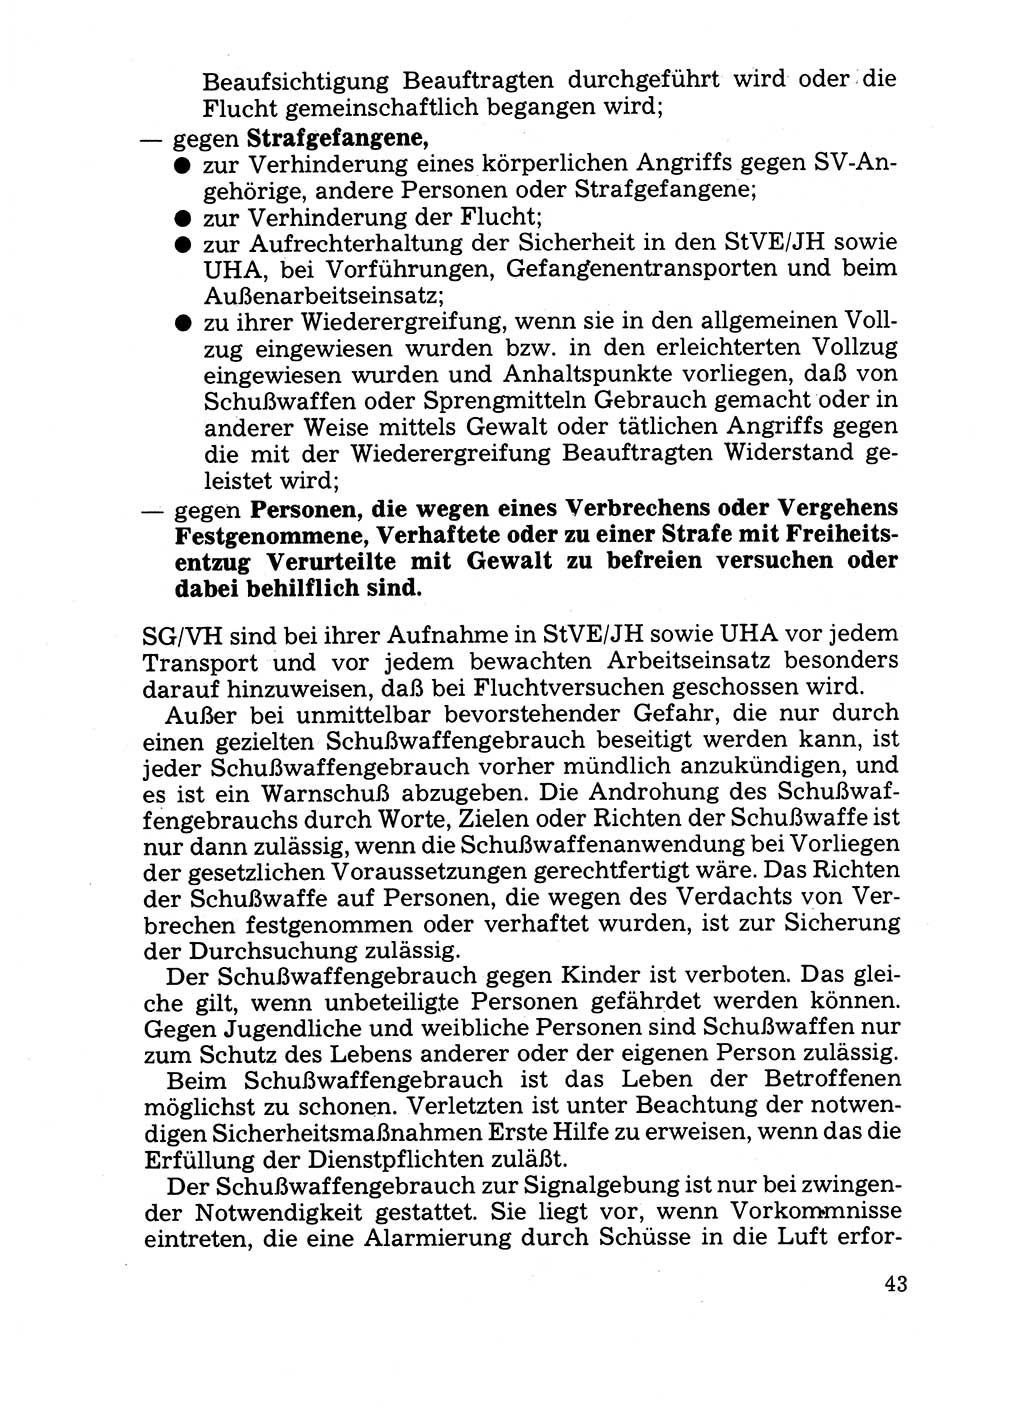 Handbuch für operative Dienste, Abteilung Strafvollzug (SV) [Ministerium des Innern (MdI) Deutsche Demokratische Republik (DDR)] 1981, Seite 43 (Hb. op. D. Abt. SV MdI DDR 1981, S. 43)